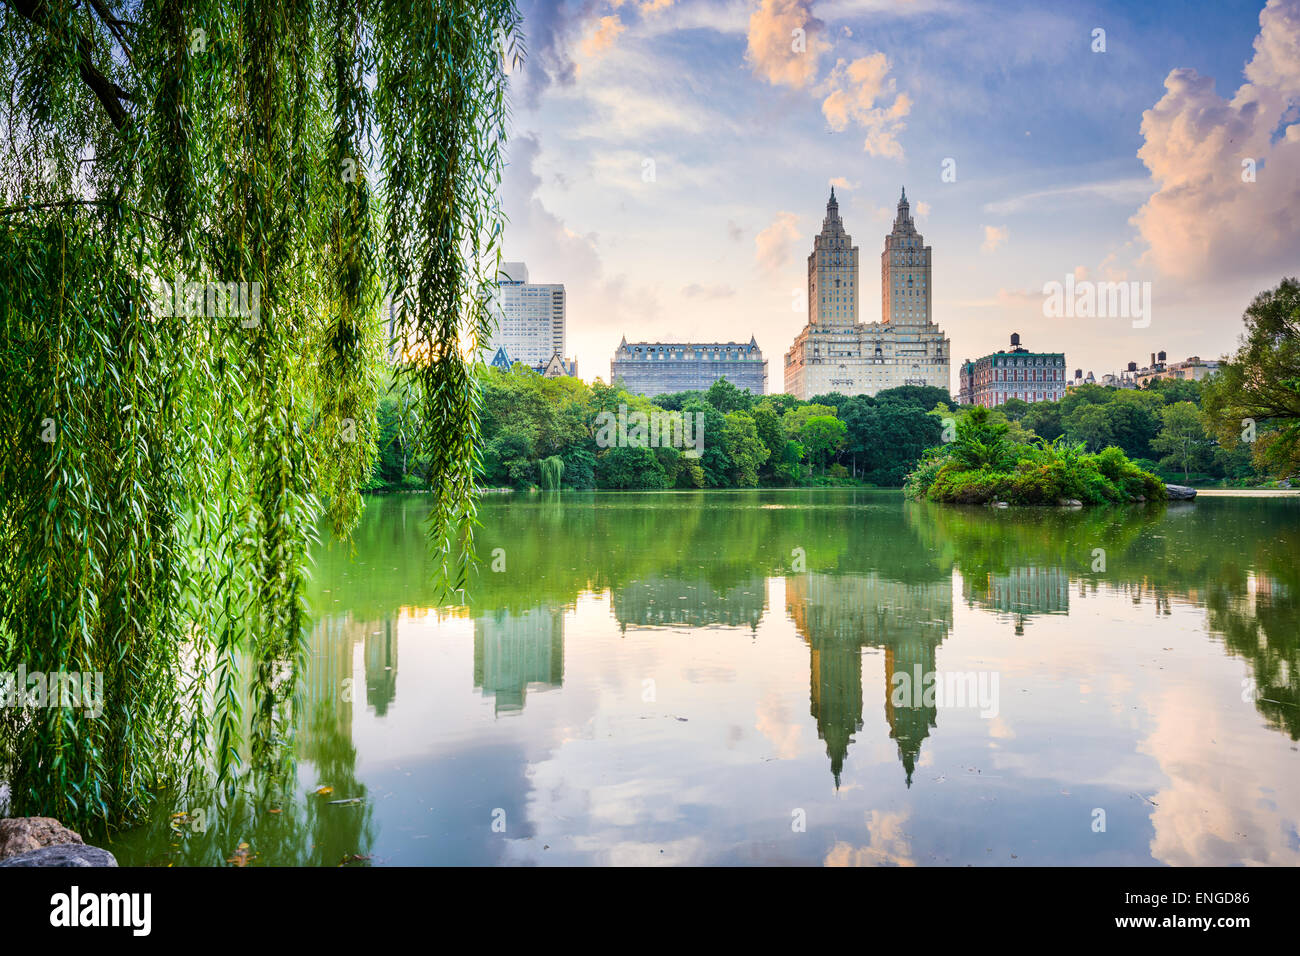 La ville de New York, USA au Central Park Lake et de l'Upper West Side de la ville. Banque D'Images